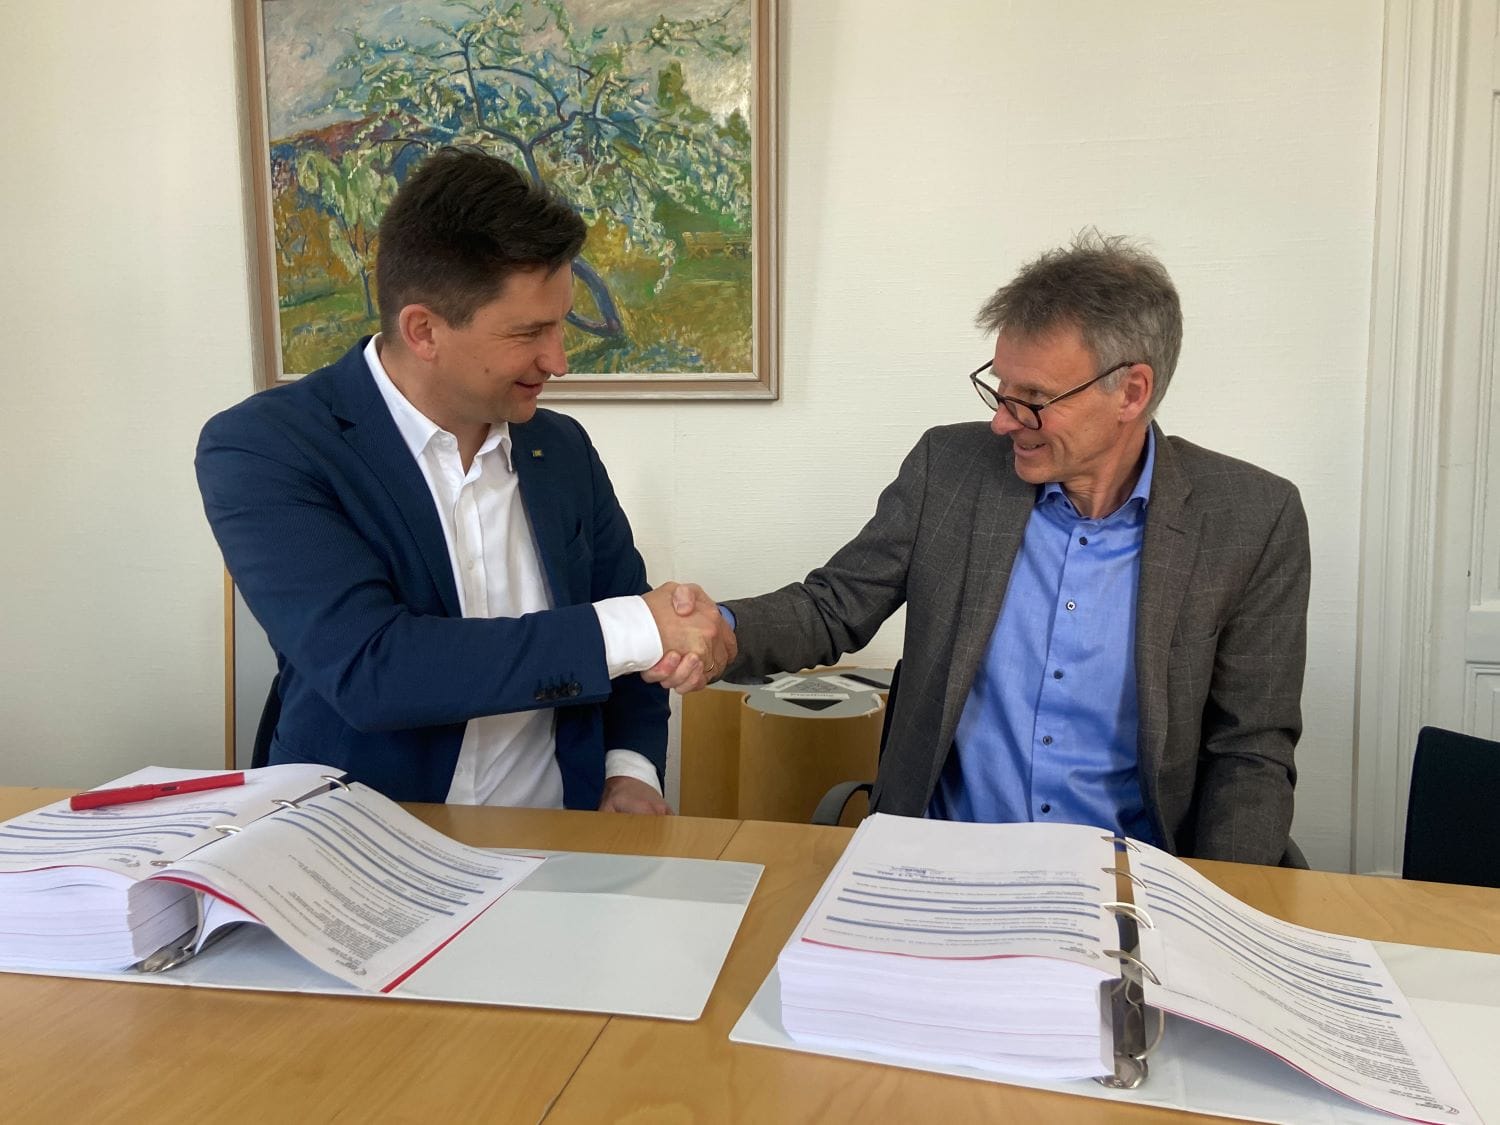 Bertil Horvli og Mathias Fabich tar hverandre i hånden etter signering av avtale.